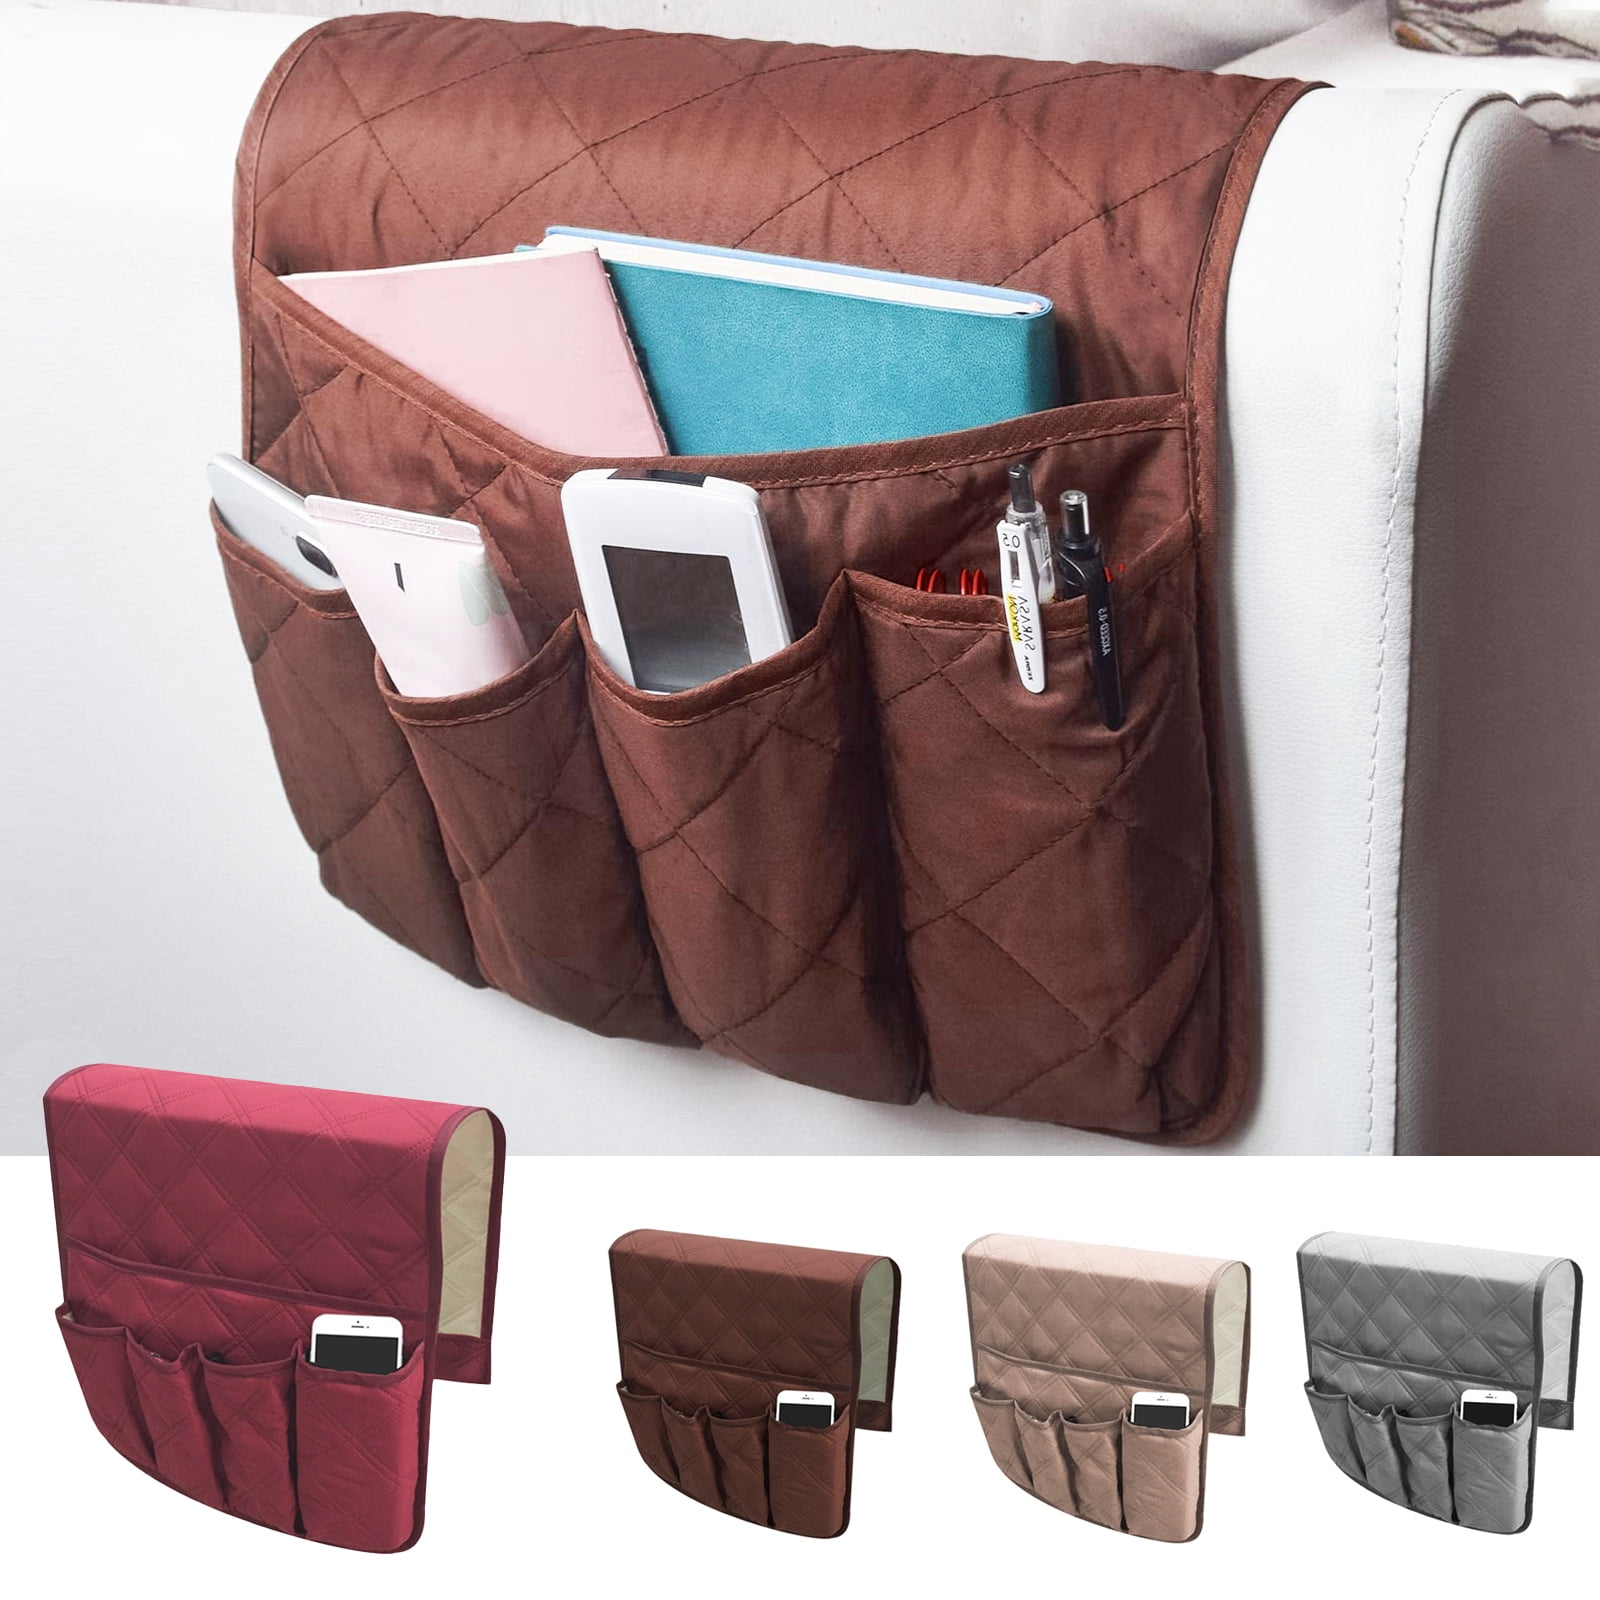 Fantasyworld Sofa Chair Armrest Caddy Pocket Organiser Storage Bag Multi-Pocket for Books Phones Remote Control Black 